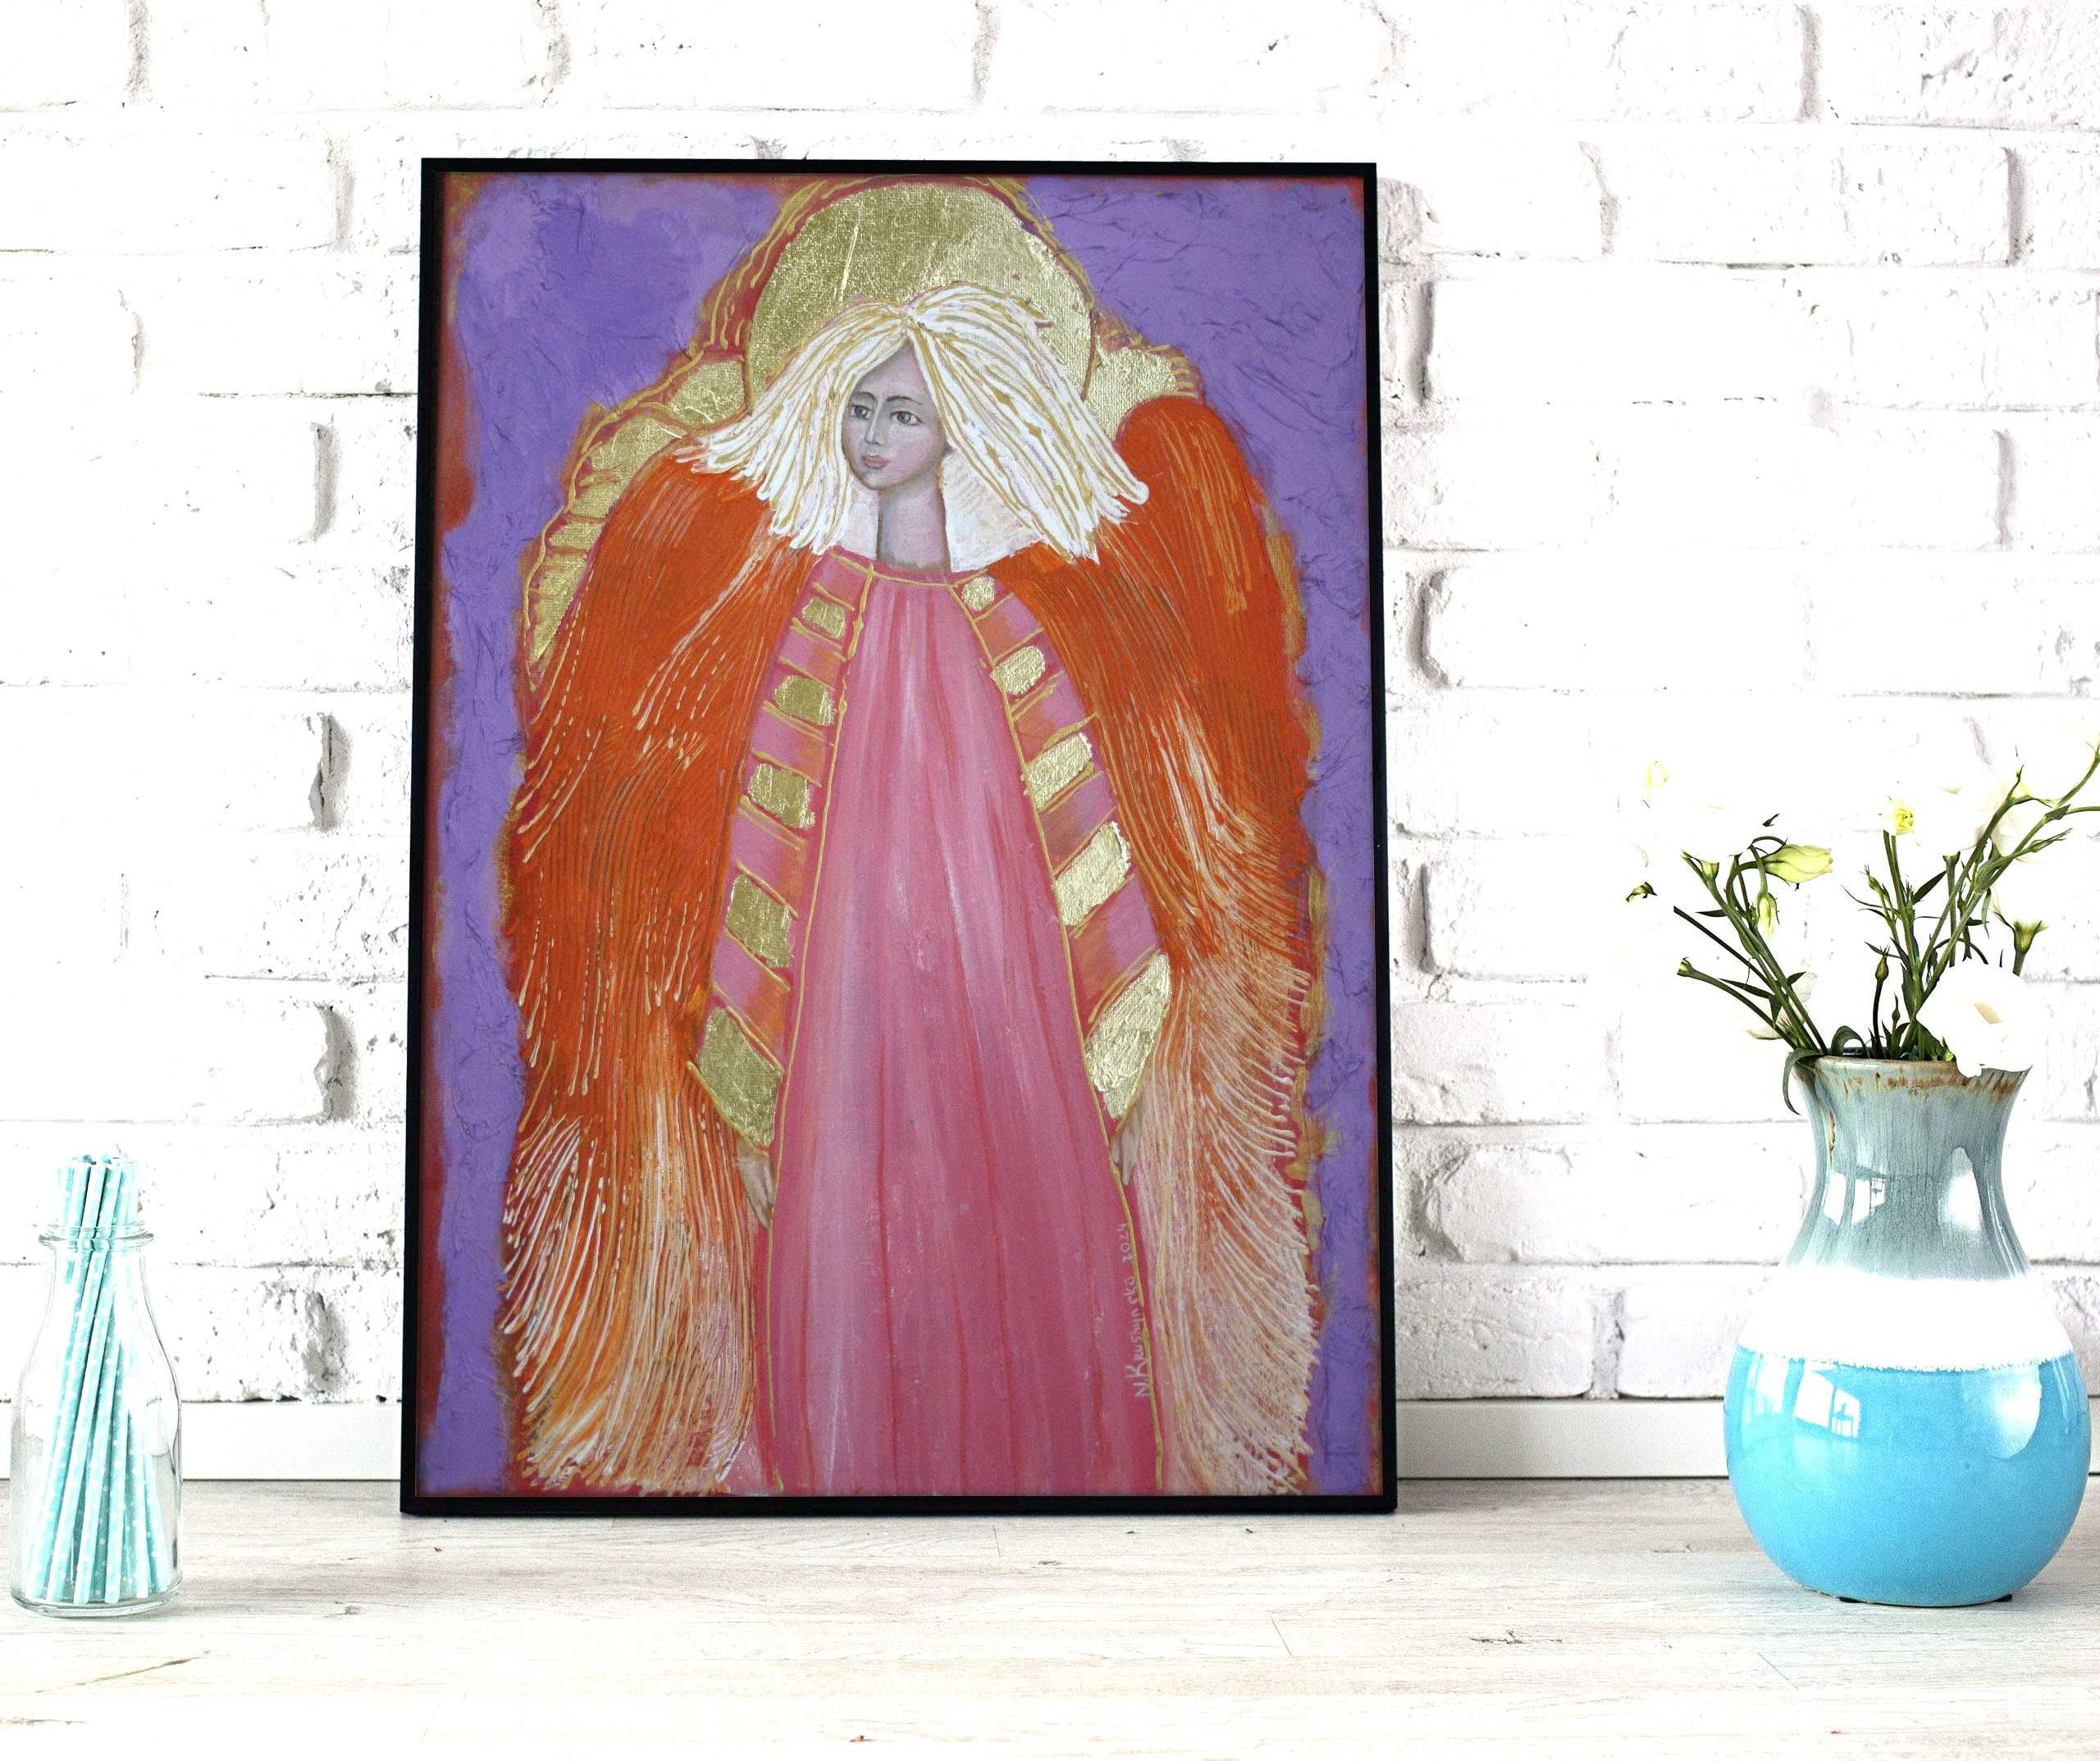 Obraz Aniół na płótnie ręcznie malowany.